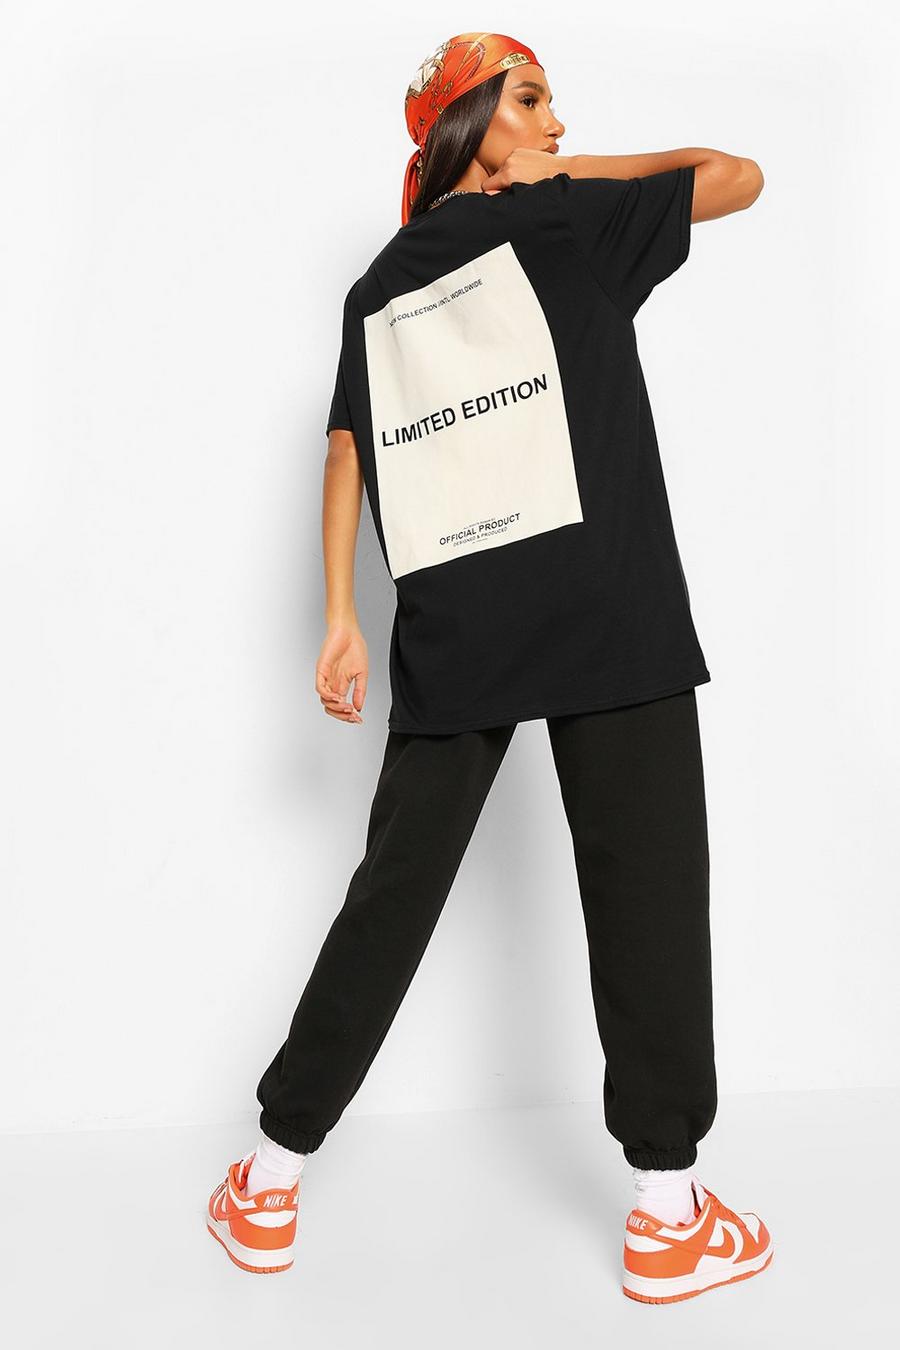 Camiseta oversize con estampado Limited Edition en la espalda, Negro